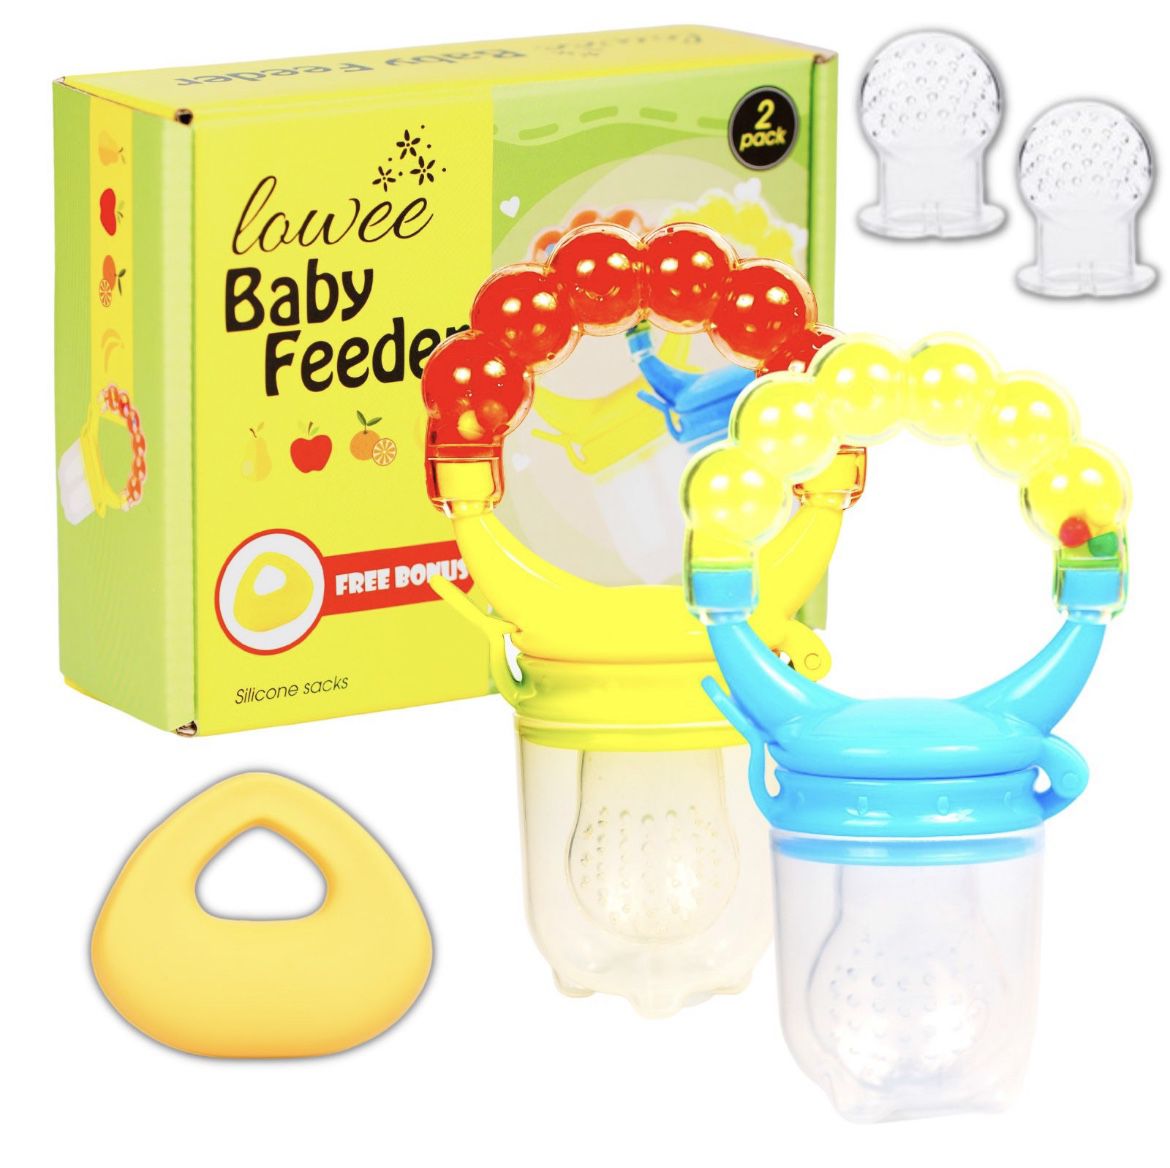 Baby Feeder / 2 Pack / Gift Package / FREE Bonus Teething Toy